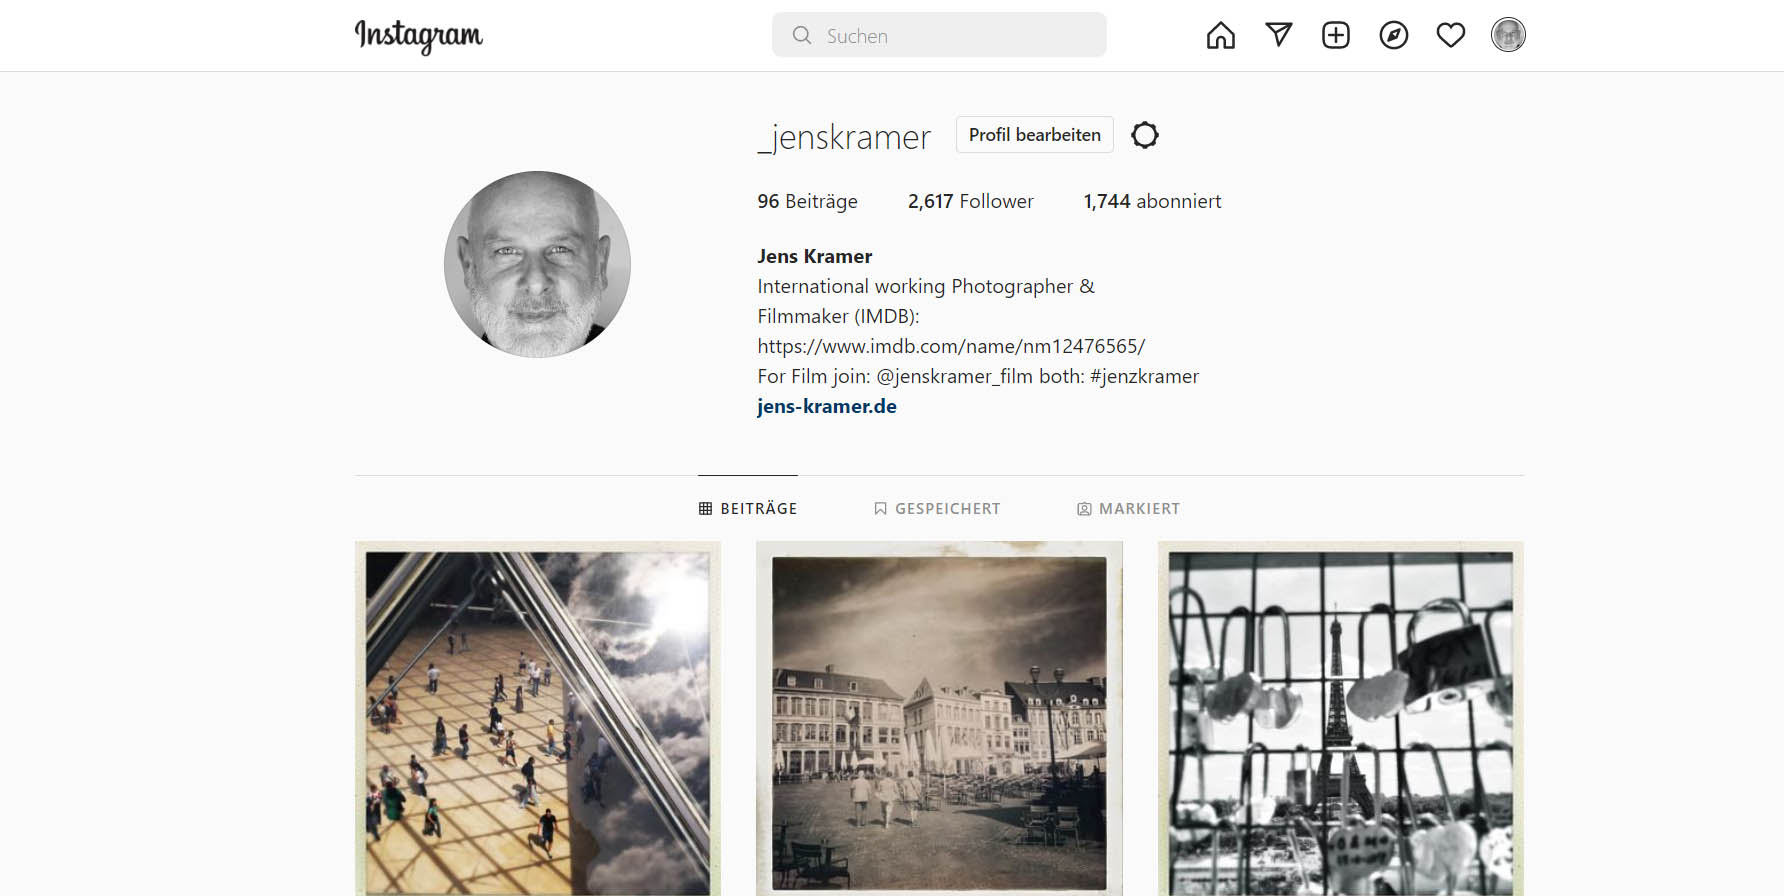 Jens Kramer on Instagram